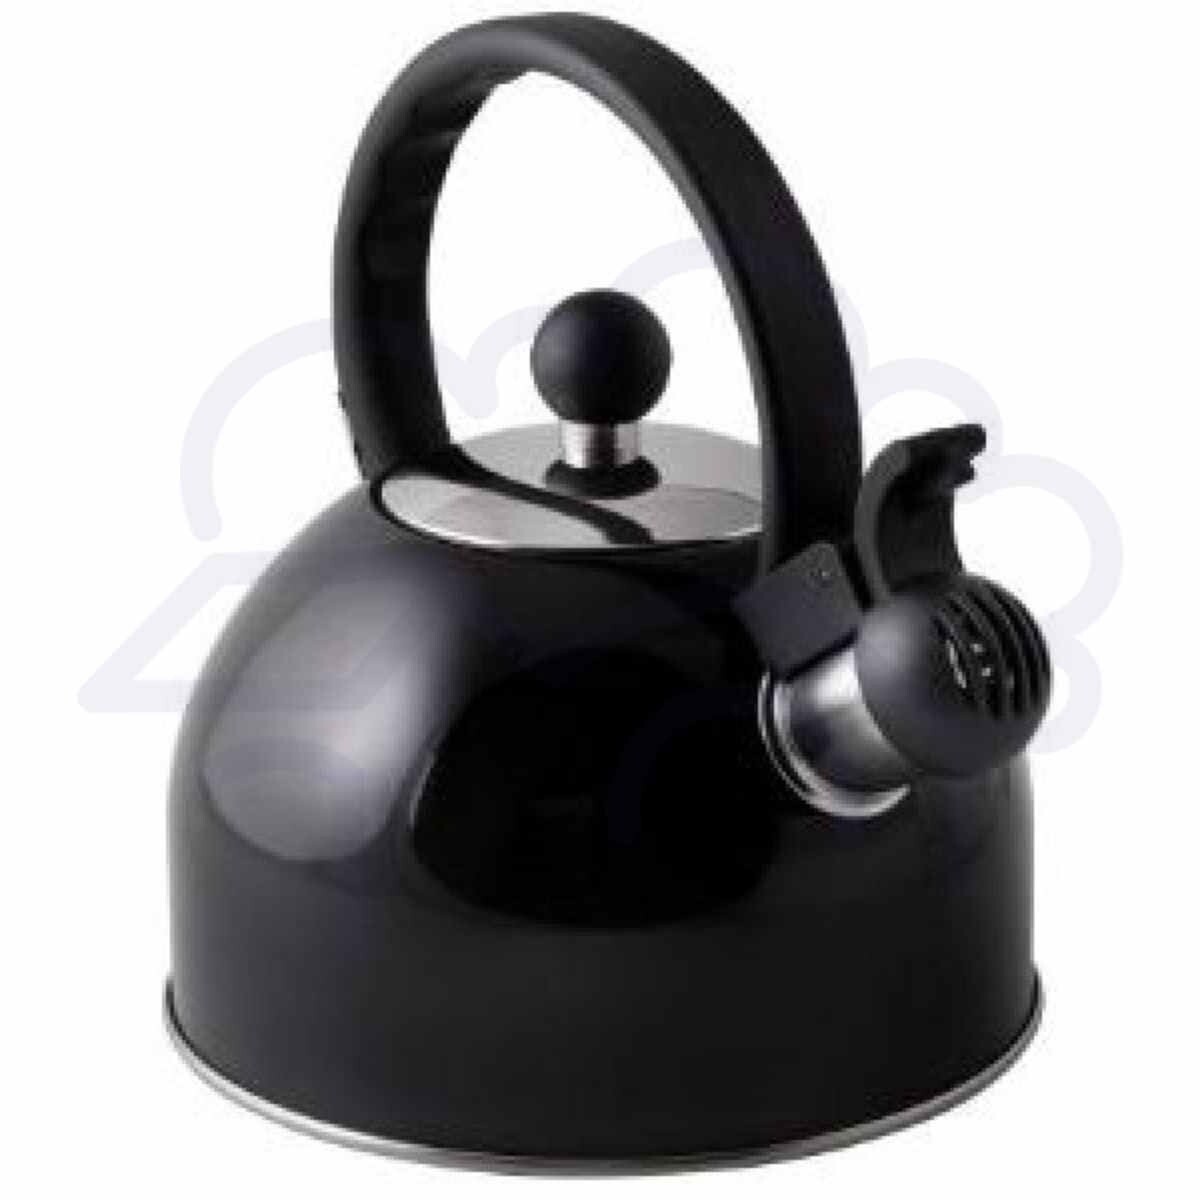 Black whistling kettle 1.5 litre